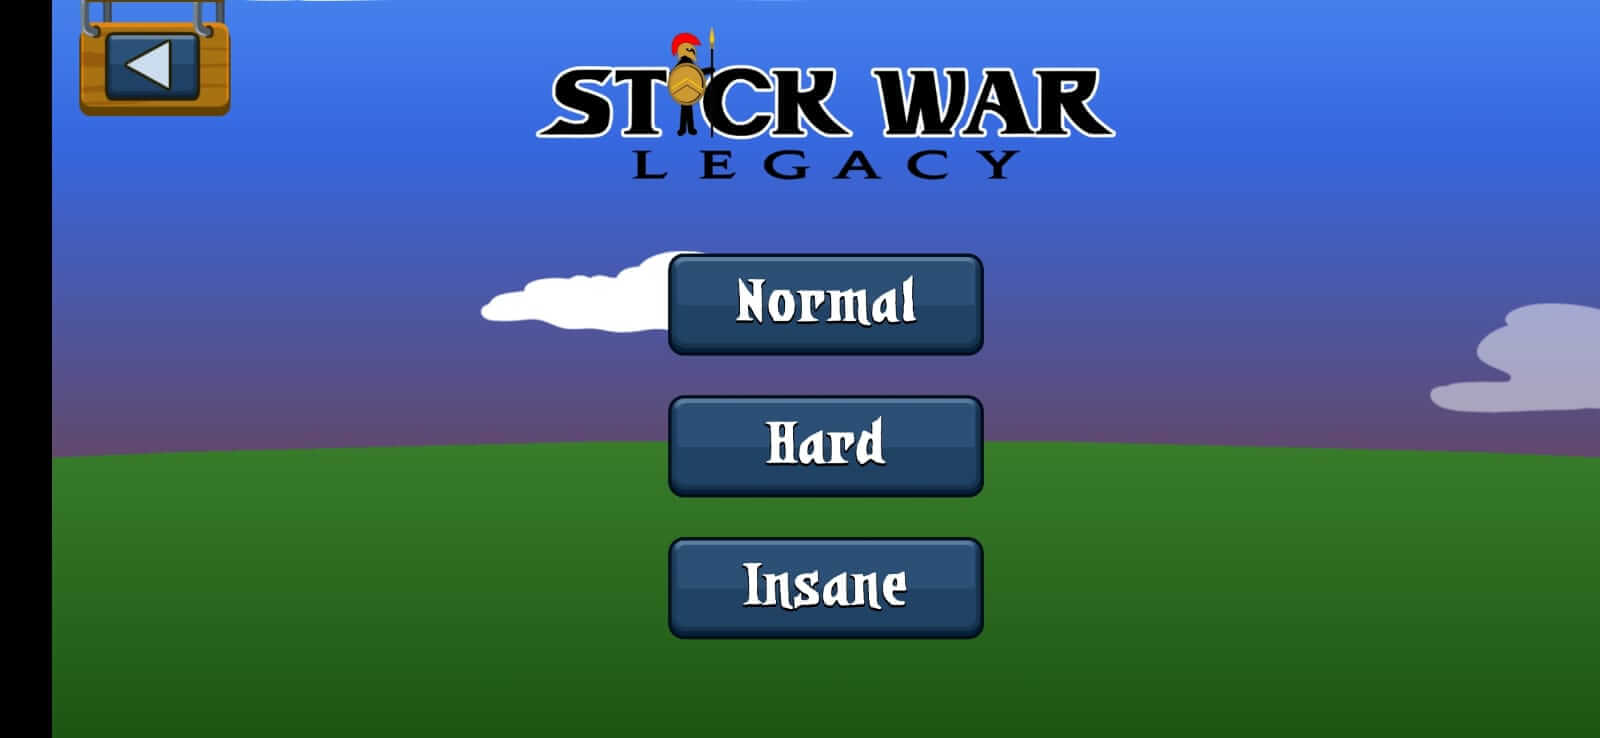 Stick War: Tangkapan layar warisan